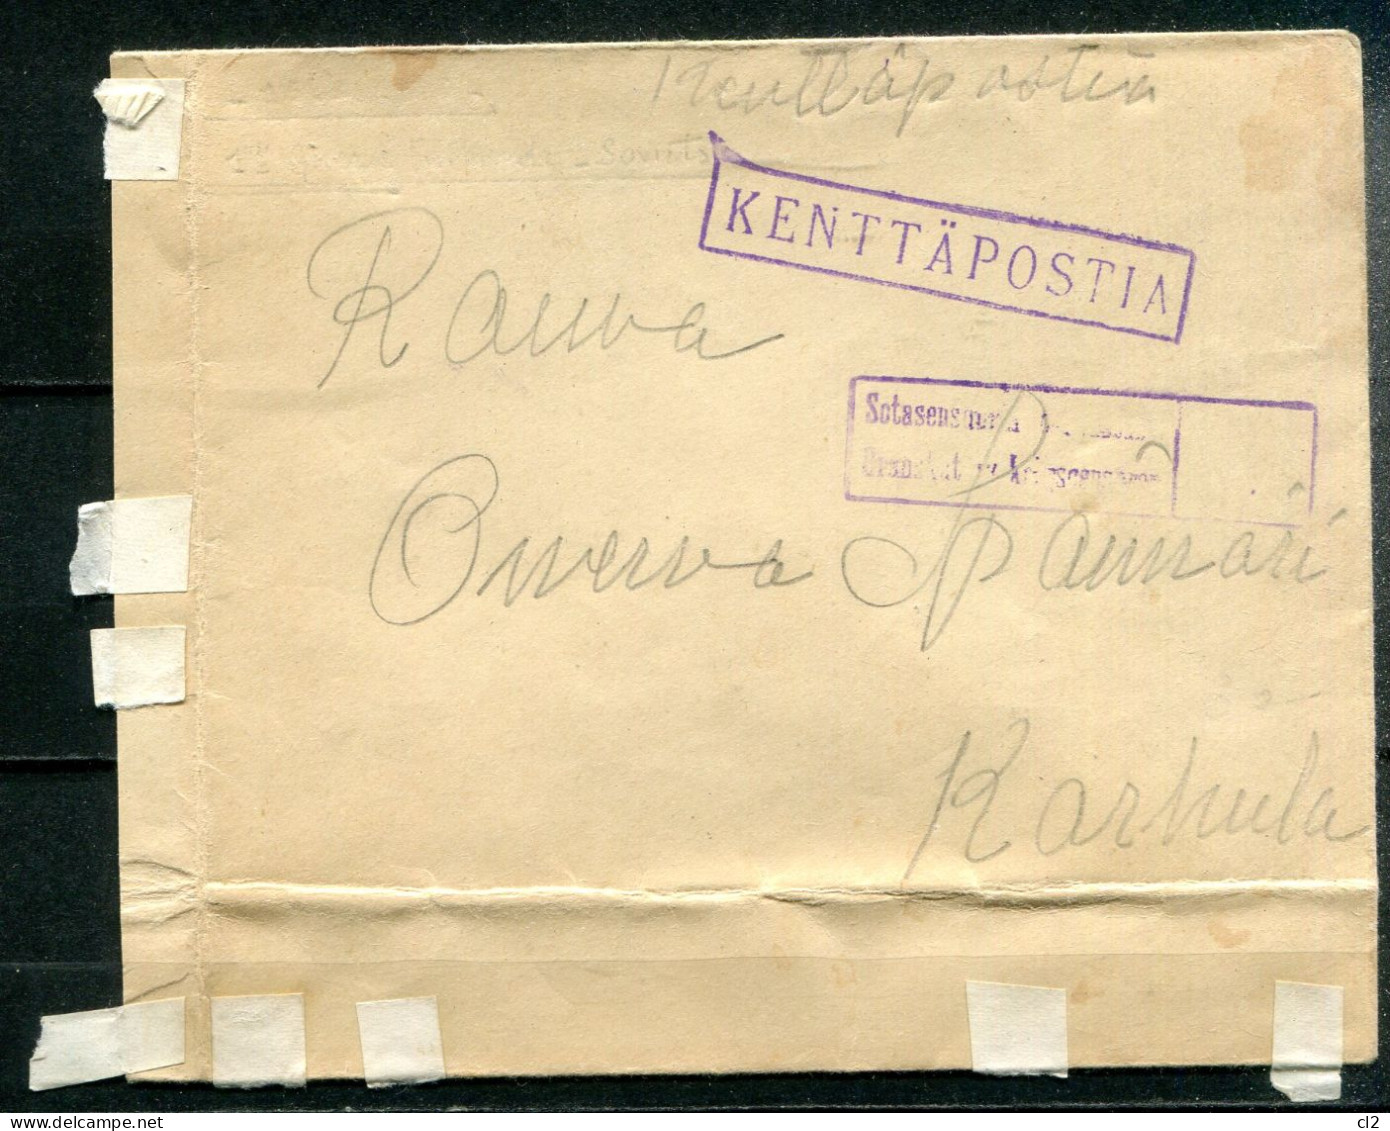 FINLANDE - Guerre D'Hiver (Talvisota) - Courrier Militaire (Kenttäpostia) Envoyé Du Front Etarrivé à KARKULA Le 15.IV.40 - Lettres & Documents